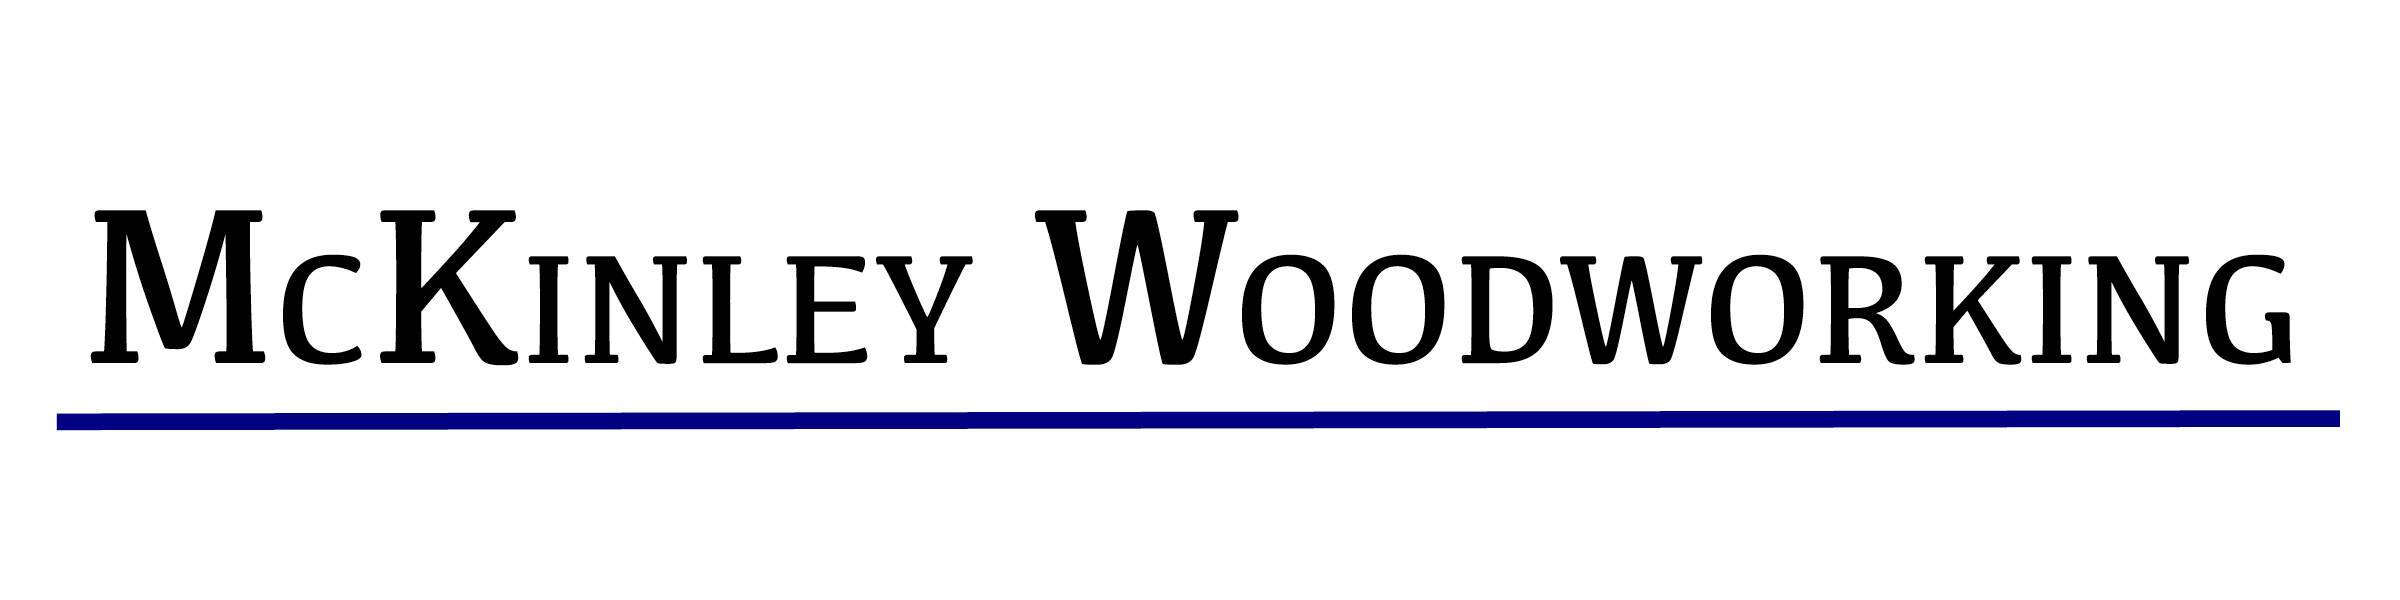 McKinley Woodworking